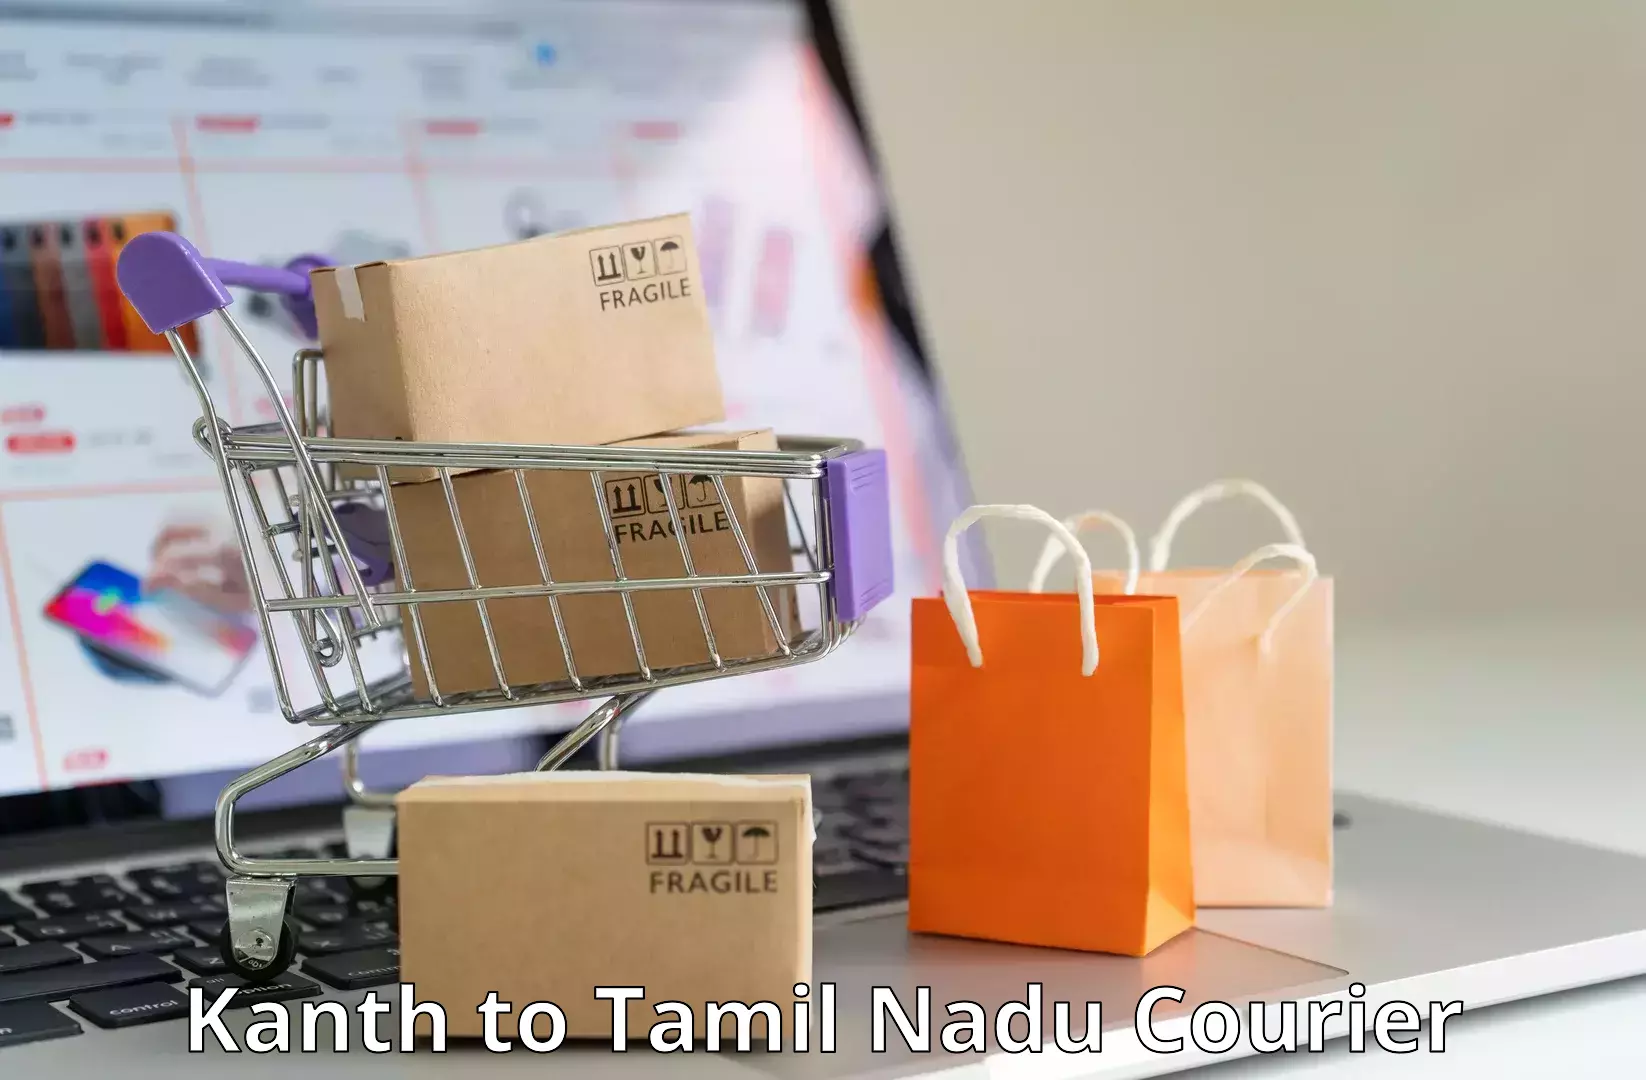 Door-to-door freight service Kanth to Tamil Nadu